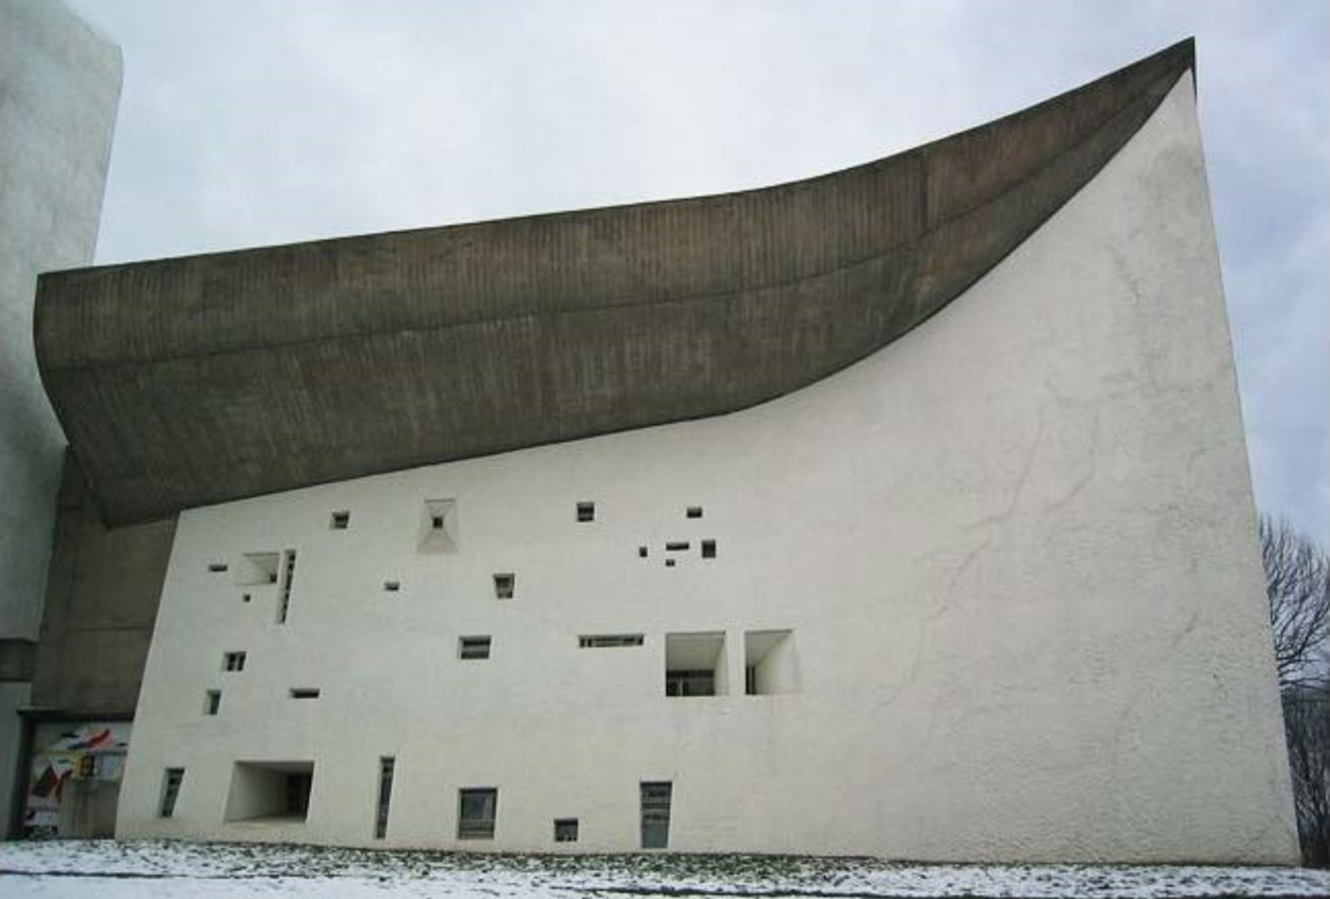 Nhà nguyện Notre Dame du Haut của Le Corbusier ở Ronchamp. Công trình sau này có những chi tiết đặc biệt lấy cảm hứng từ “Guernica'' - được sáng tác để phản ứng lại vụ ném bom Guernica, bức tranh được trình bày trên tấm bảng màu xám, đen và trắng, được nhiều nhà phê bình nghệ thuật coi là một trong những bức họa chống chiến tranh mạnh mẽ nhất trong lịch sử của Pablo Picassos. (Ảnh: kienviet.net)